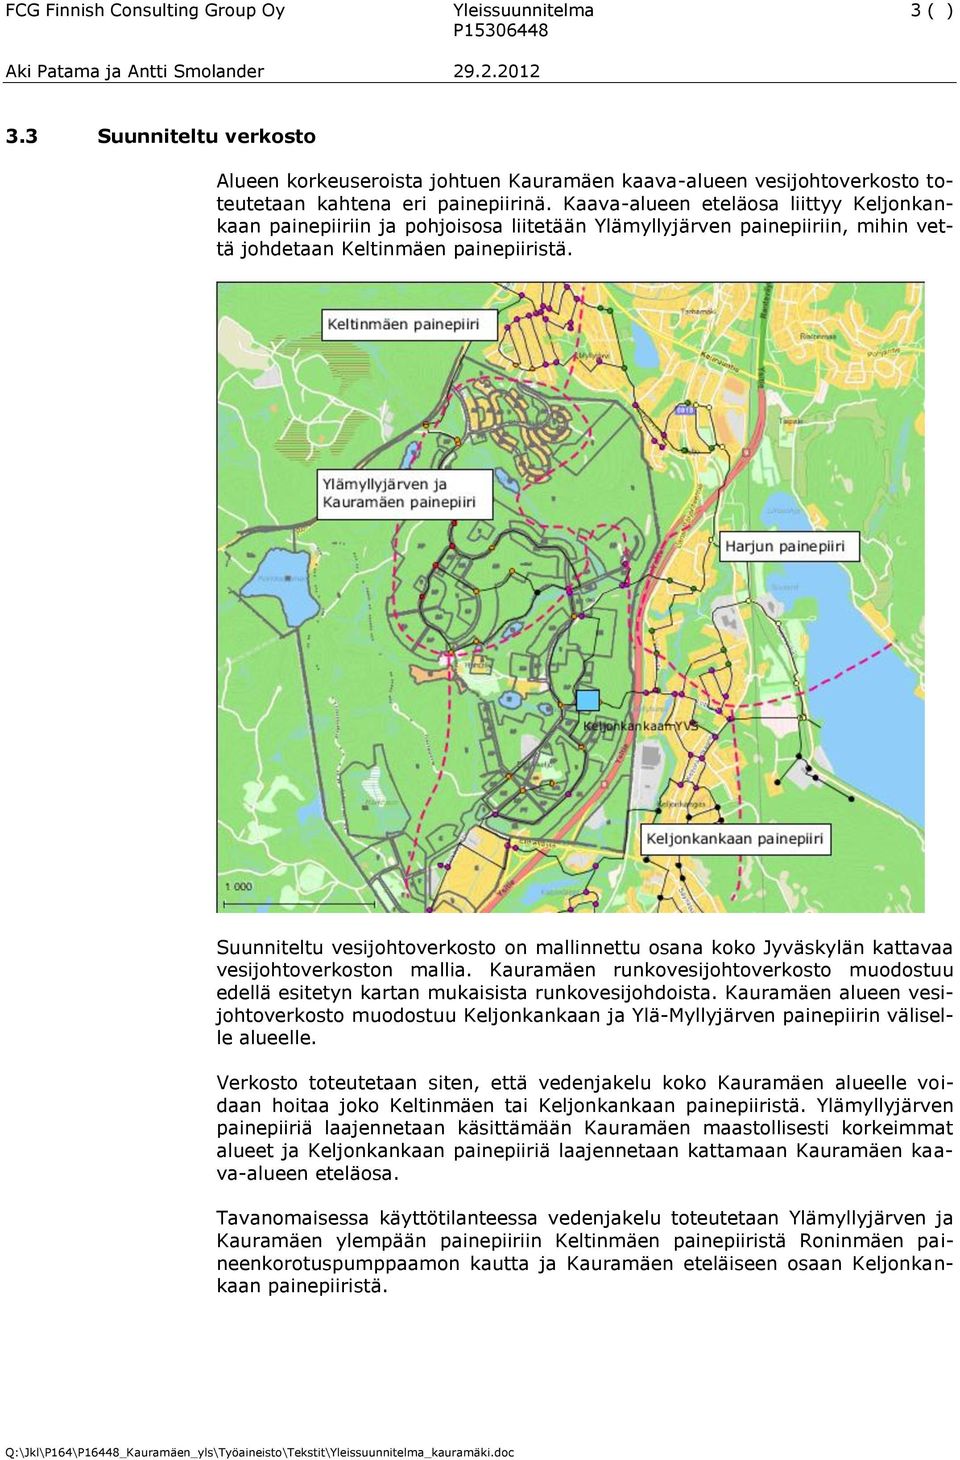 Suunniteltu vesijohtoverkosto on mallinnettu osana koko Jyväskylän kattavaa vesijohtoverkoston mallia. Kauramäen runkovesijohtoverkosto muodostuu edellä esitetyn kartan mukaisista runkovesijohdoista.